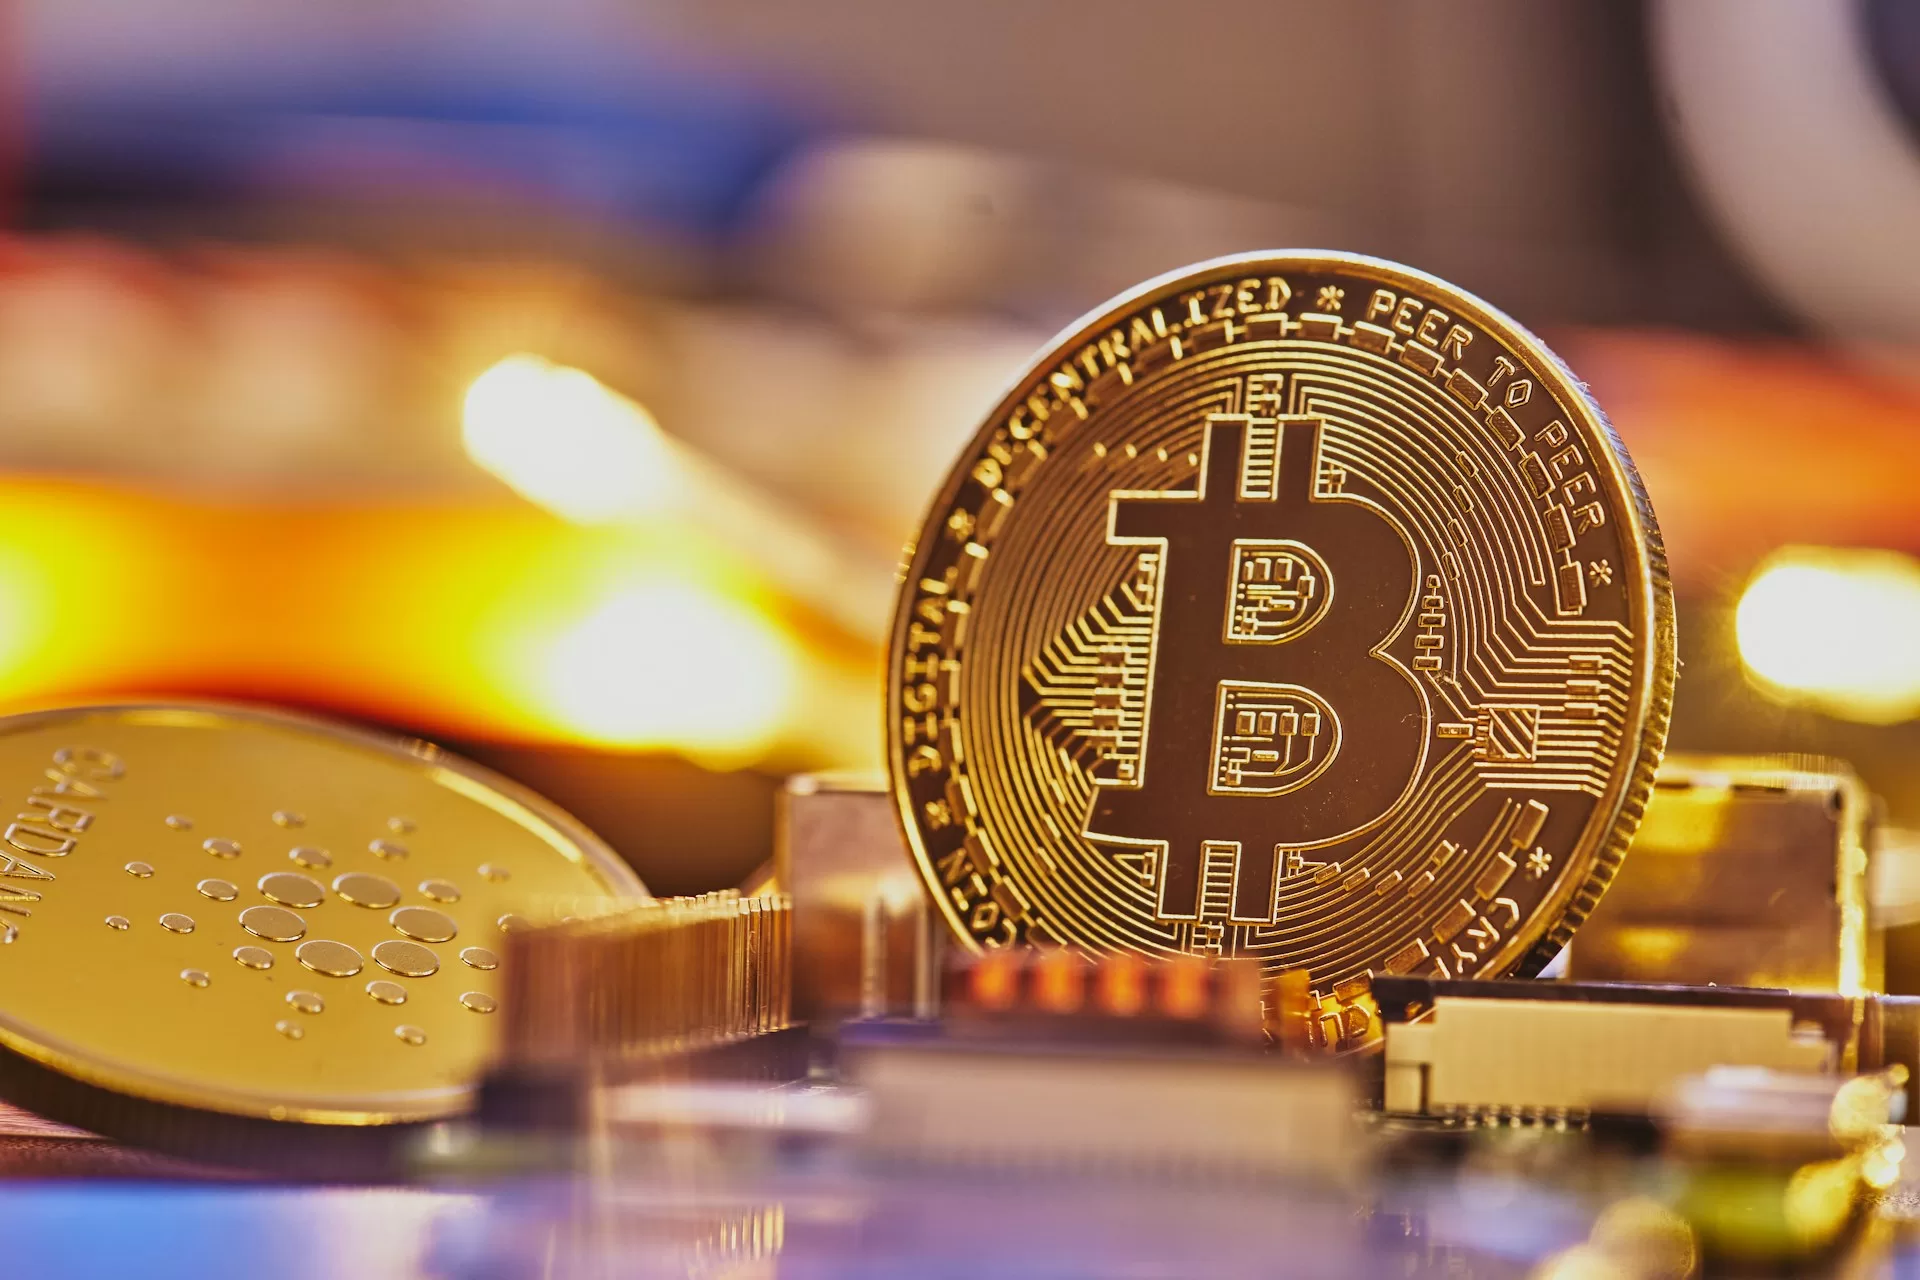 Image of Bitcoin token.